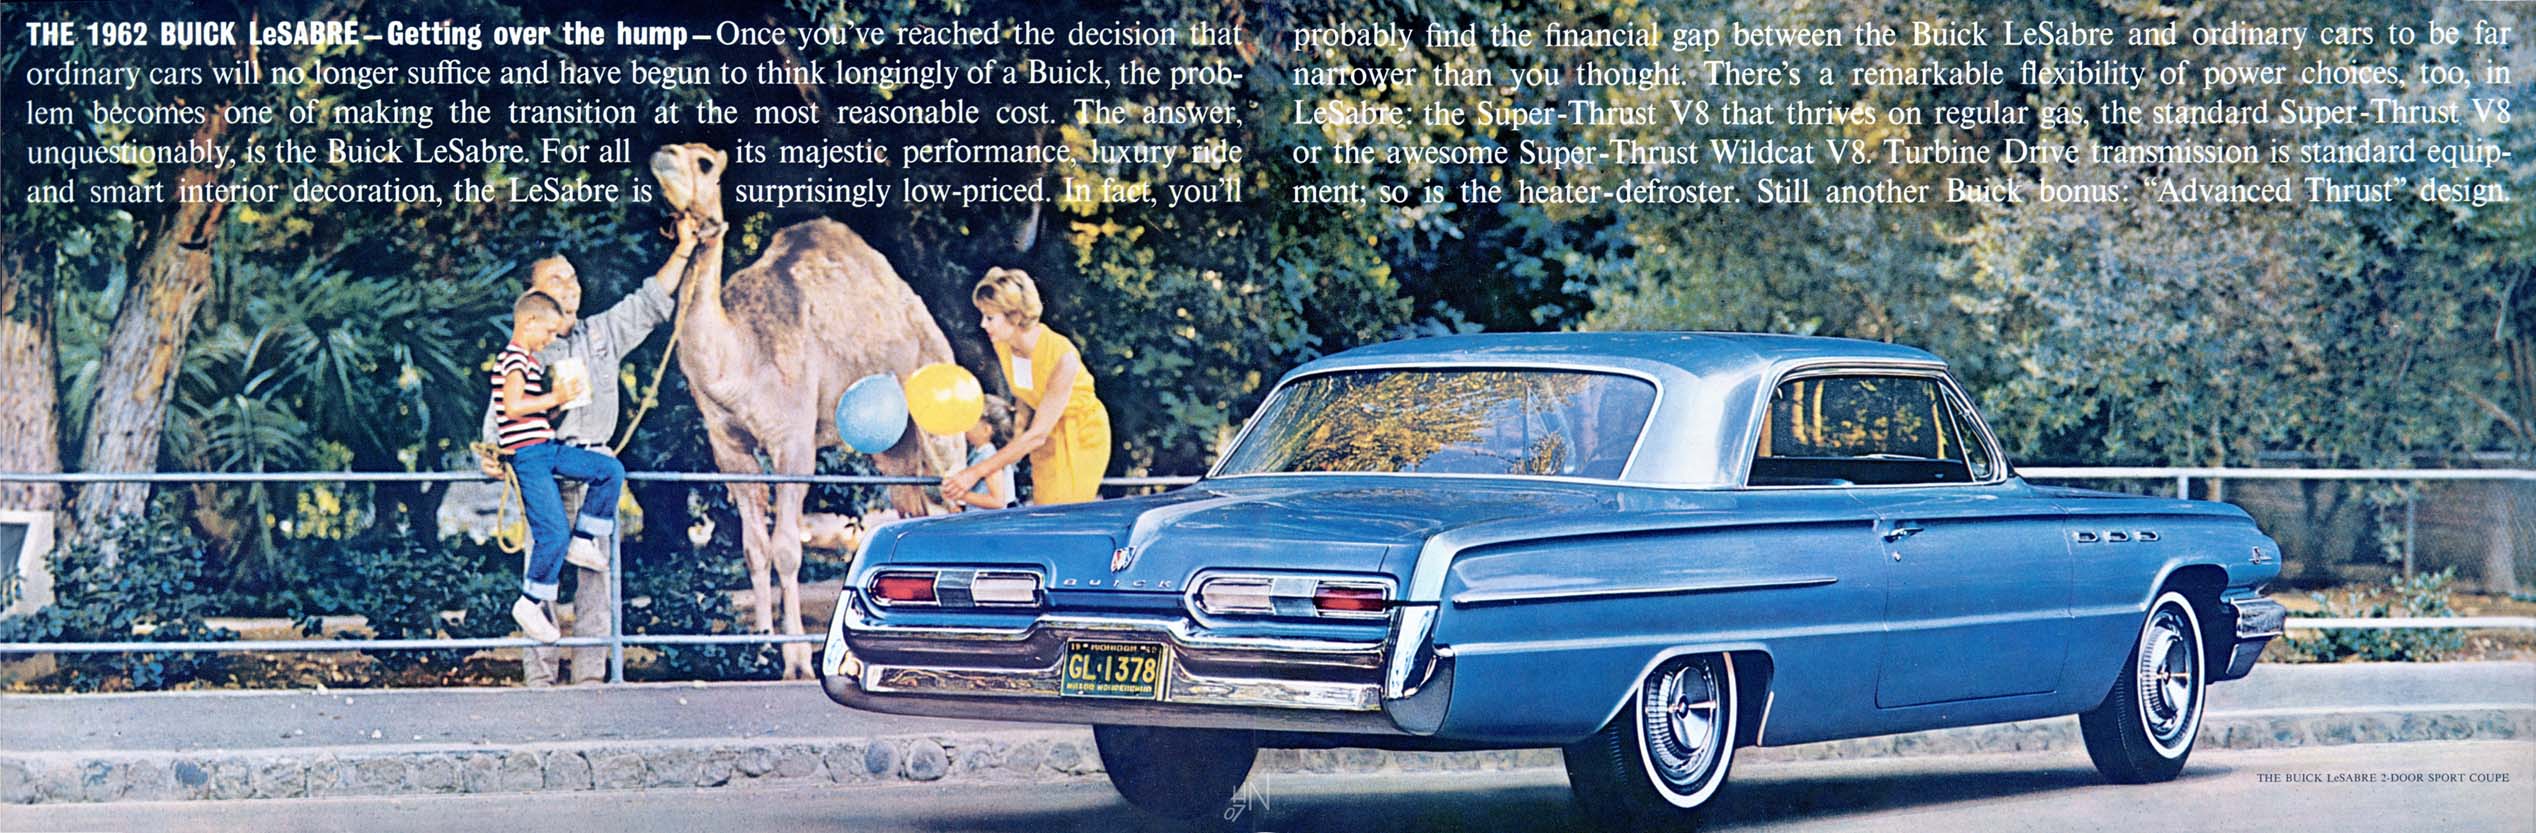 1962 Buick Full Line-40-41